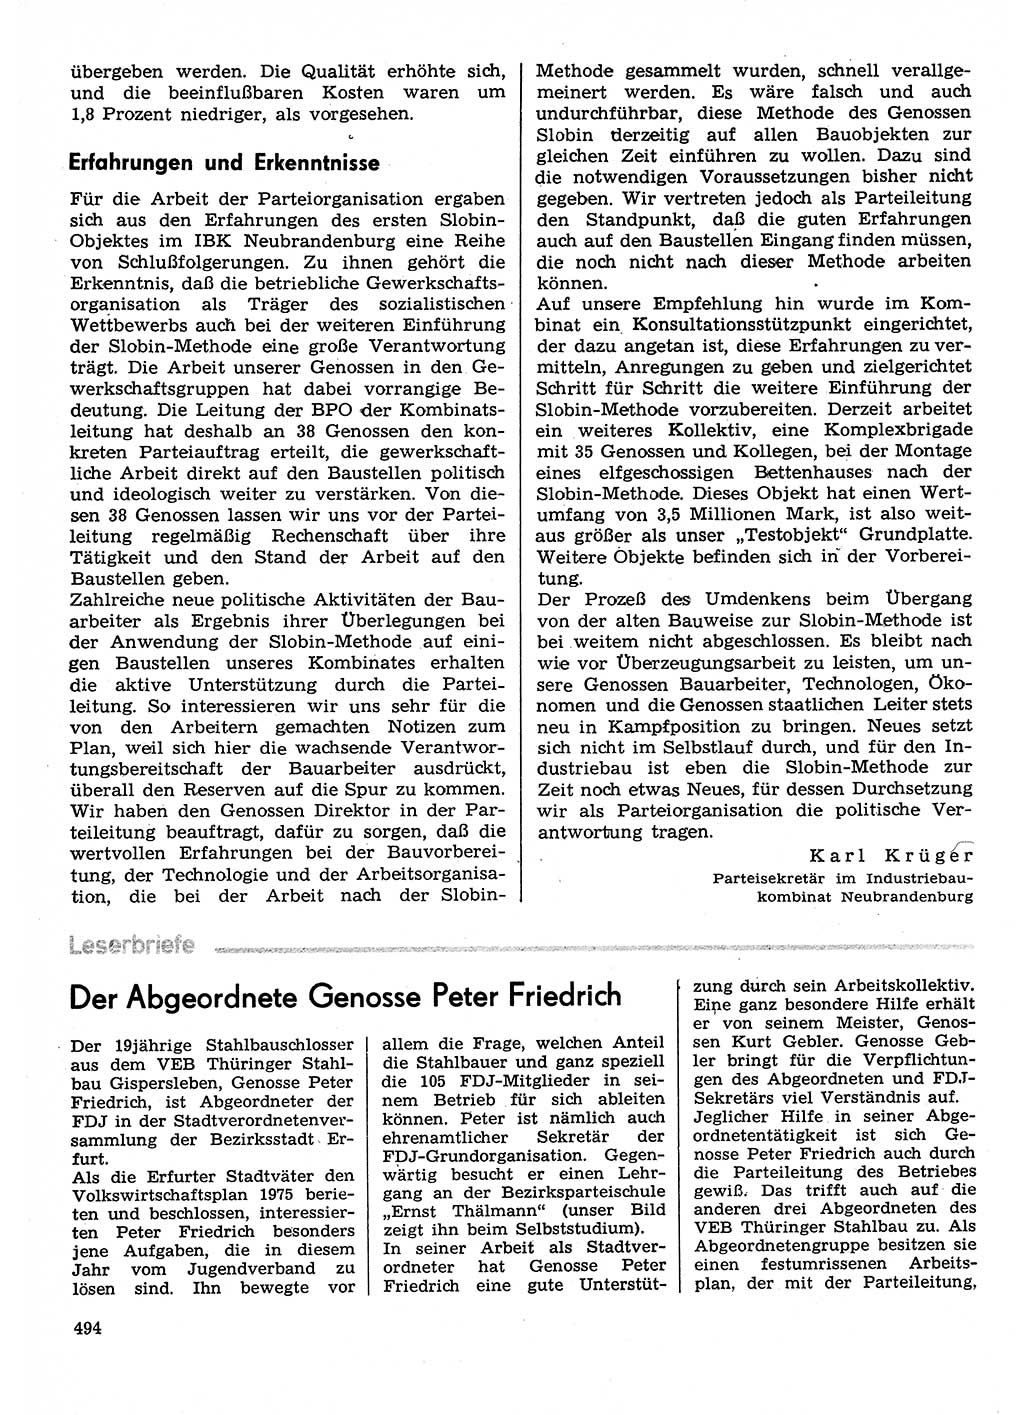 Neuer Weg (NW), Organ des Zentralkomitees (ZK) der SED (Sozialistische Einheitspartei Deutschlands) fÃ¼r Fragen des Parteilebens, 30. Jahrgang [Deutsche Demokratische Republik (DDR)] 1975, Seite 494 (NW ZK SED DDR 1975, S. 494)